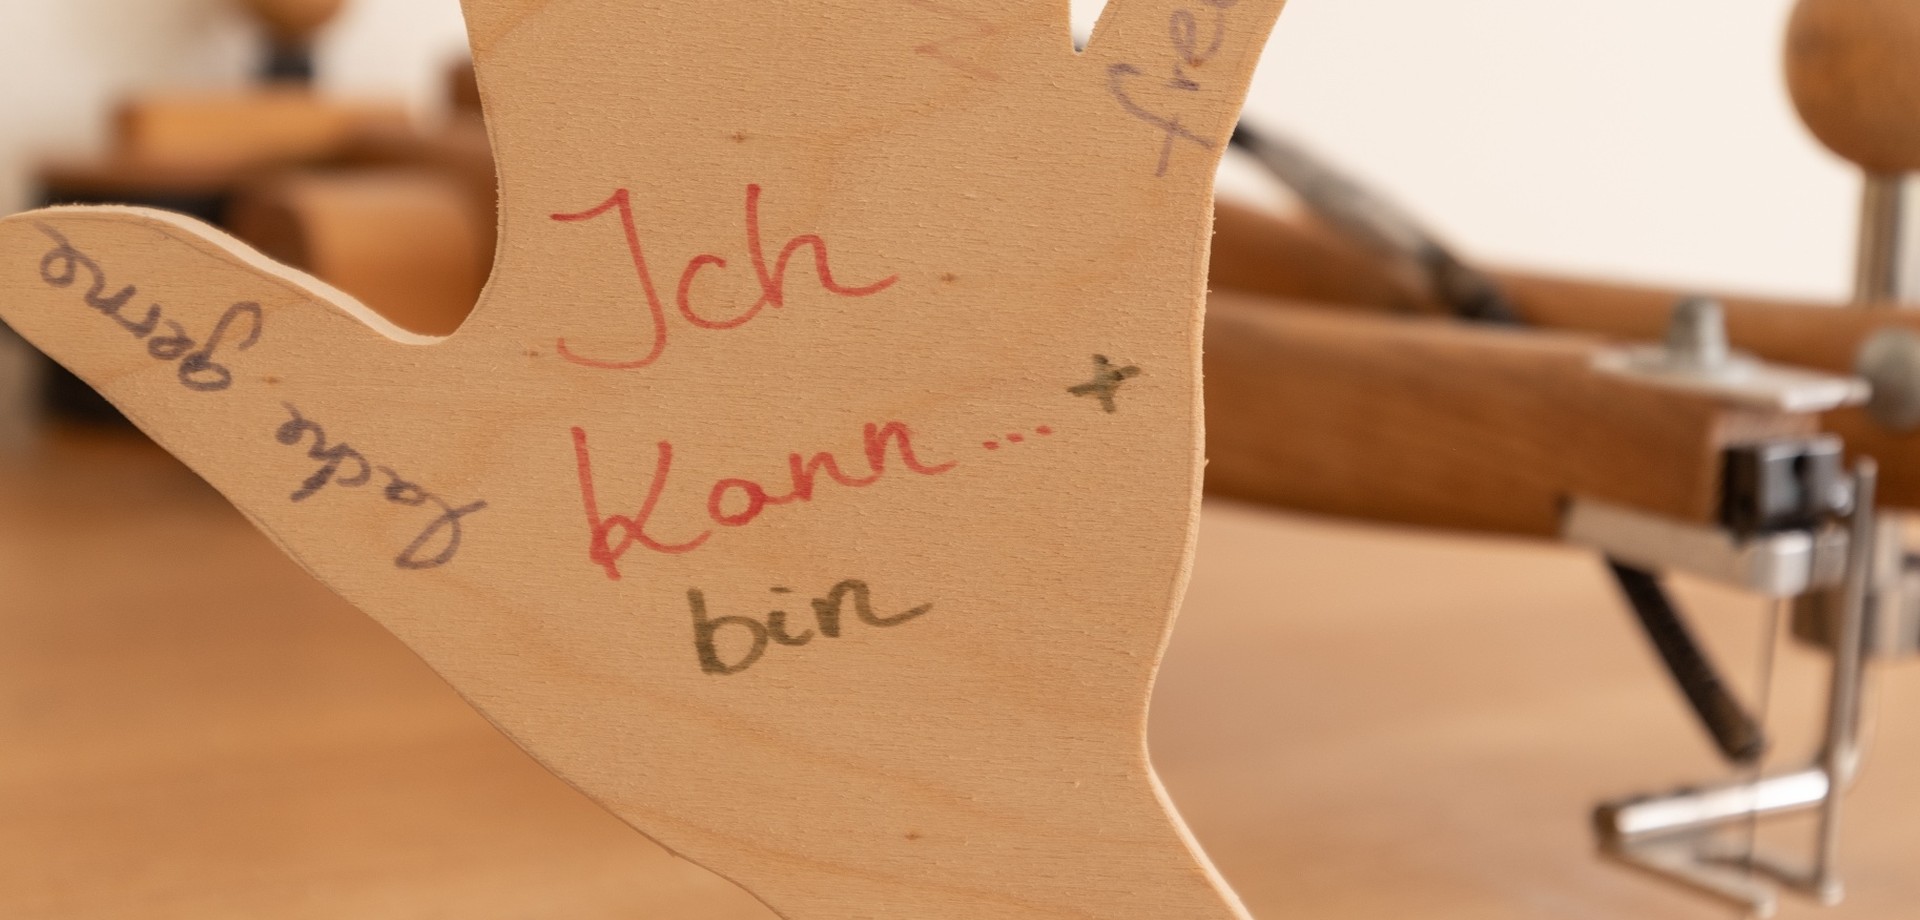 Eine in der Ergotherapie gebastelte Holzhand, auf der der Spruch "Ich kann" steht, steht auf einem Tisch.